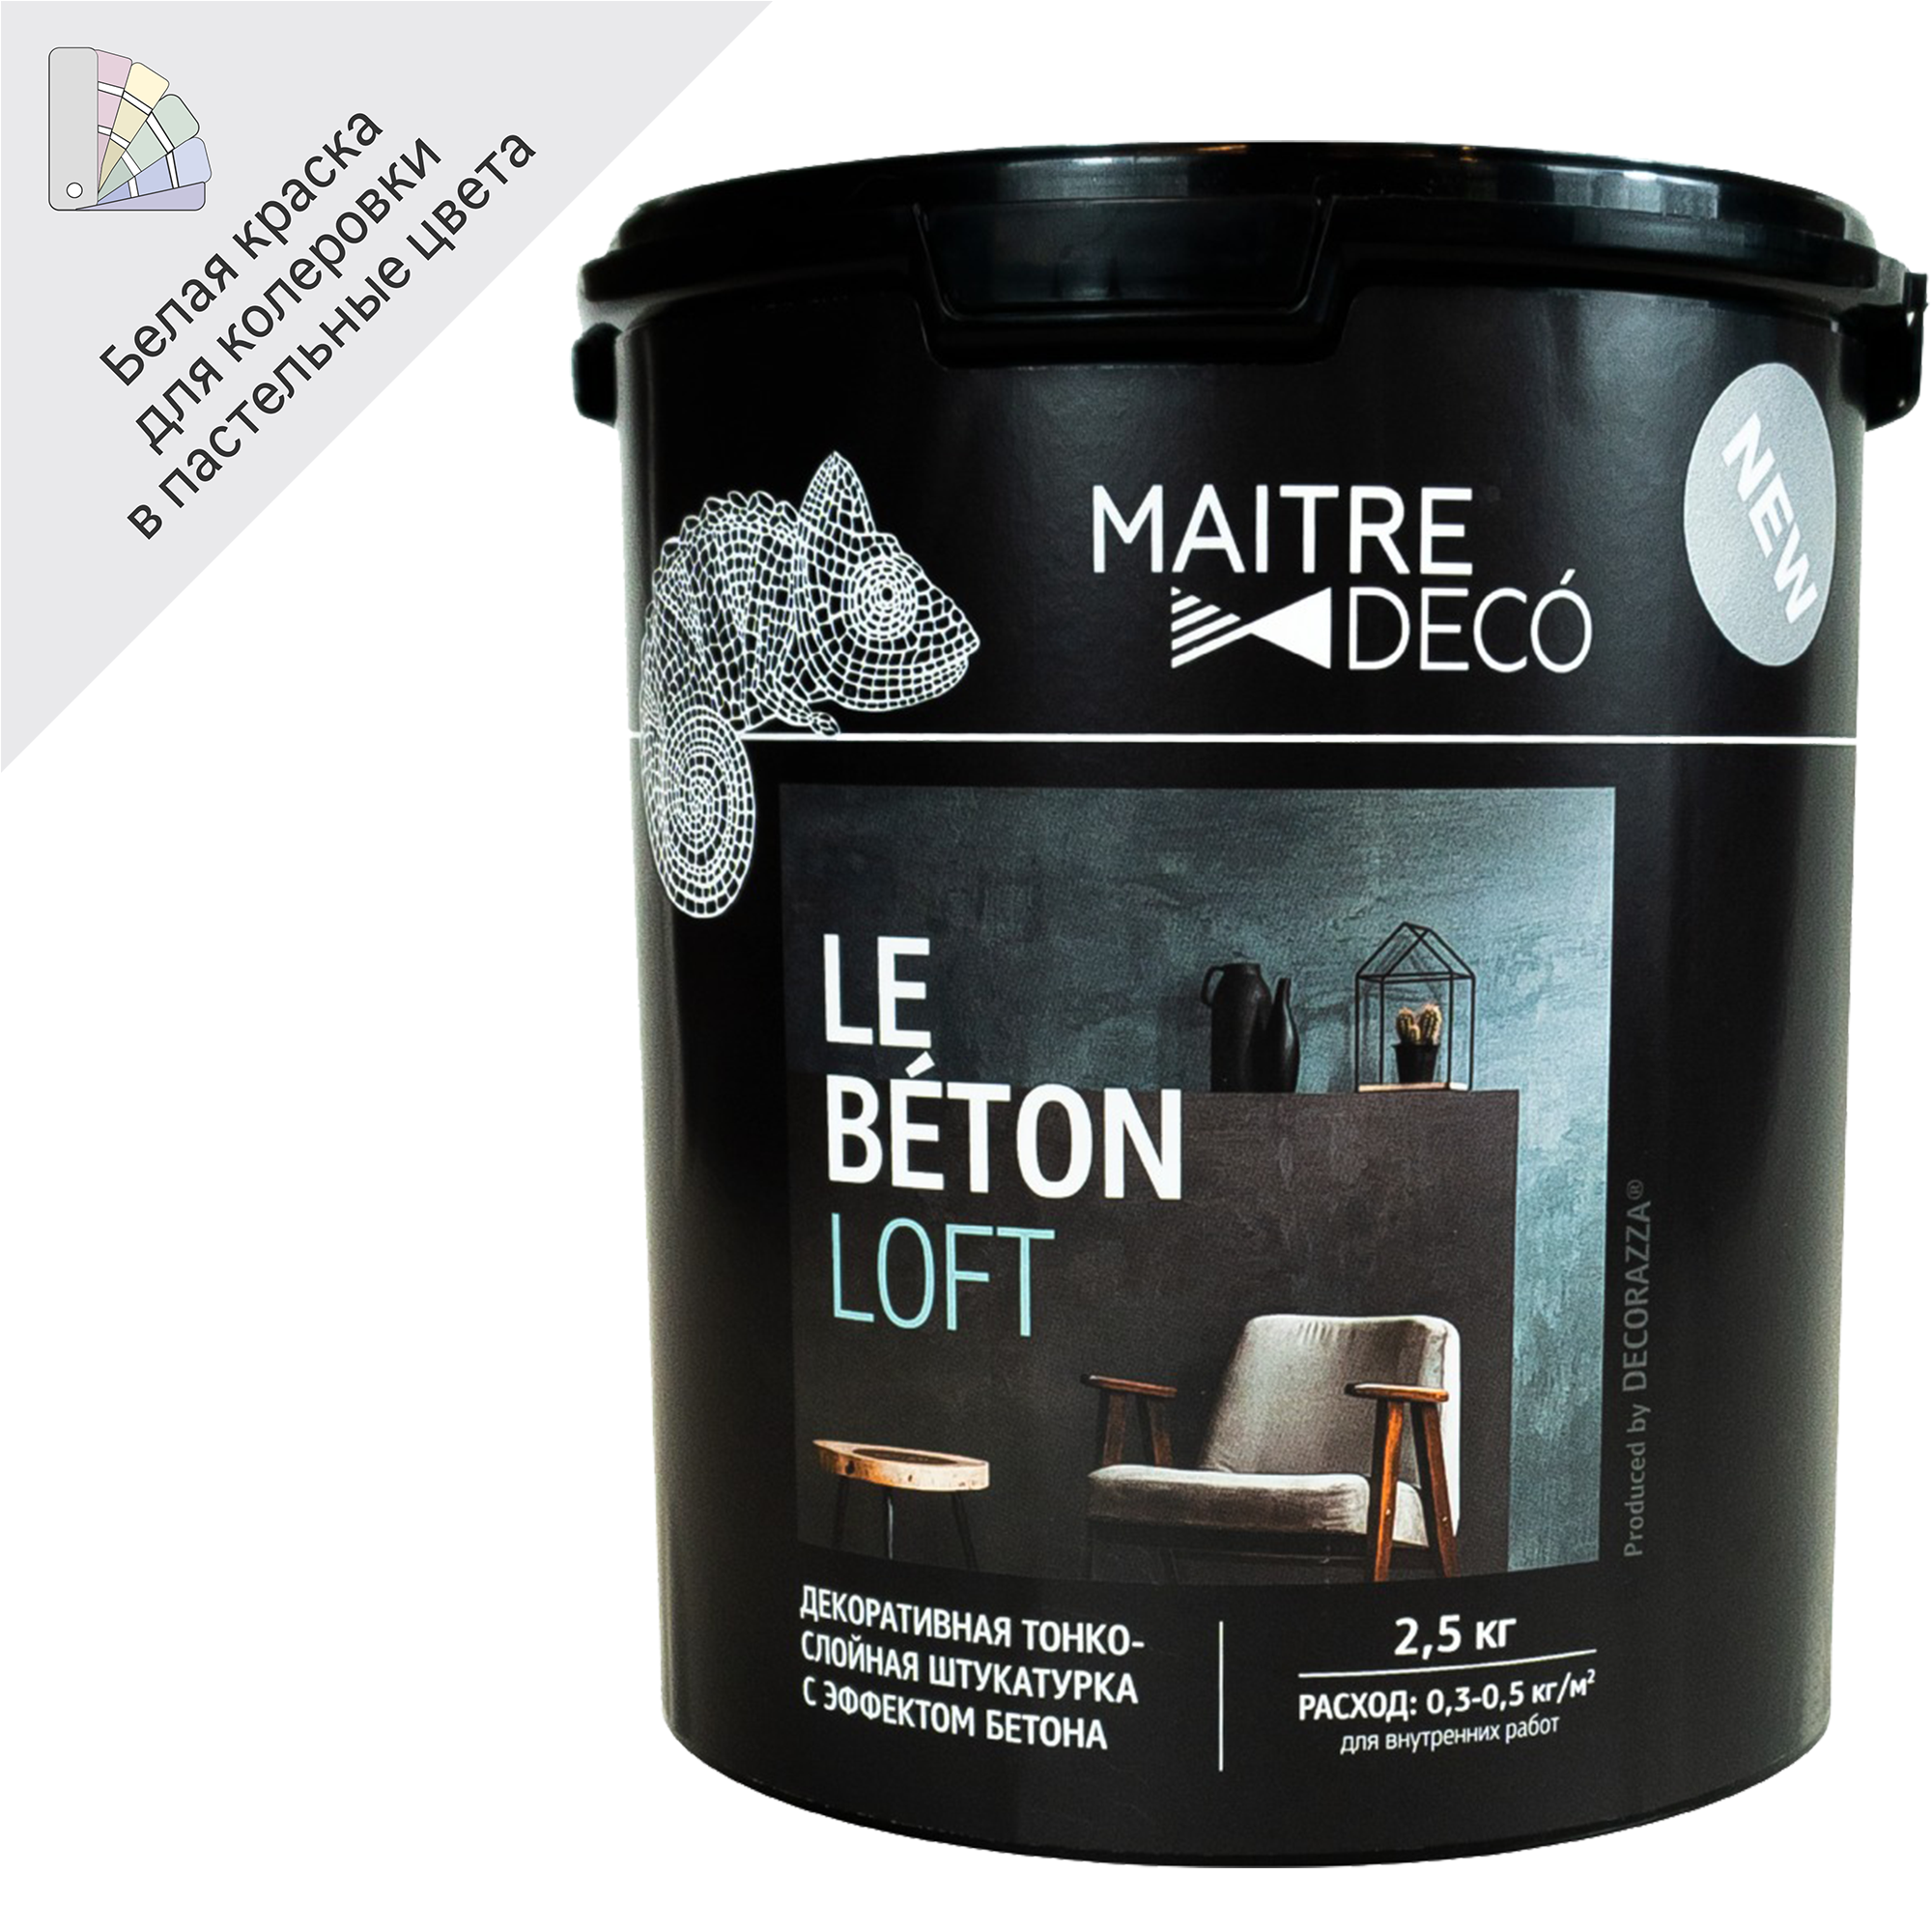 89130144 Штукатурка декоративная Le Beton Loft 2.5 кг цвет белый STLM-0078827 MAITRE DECO